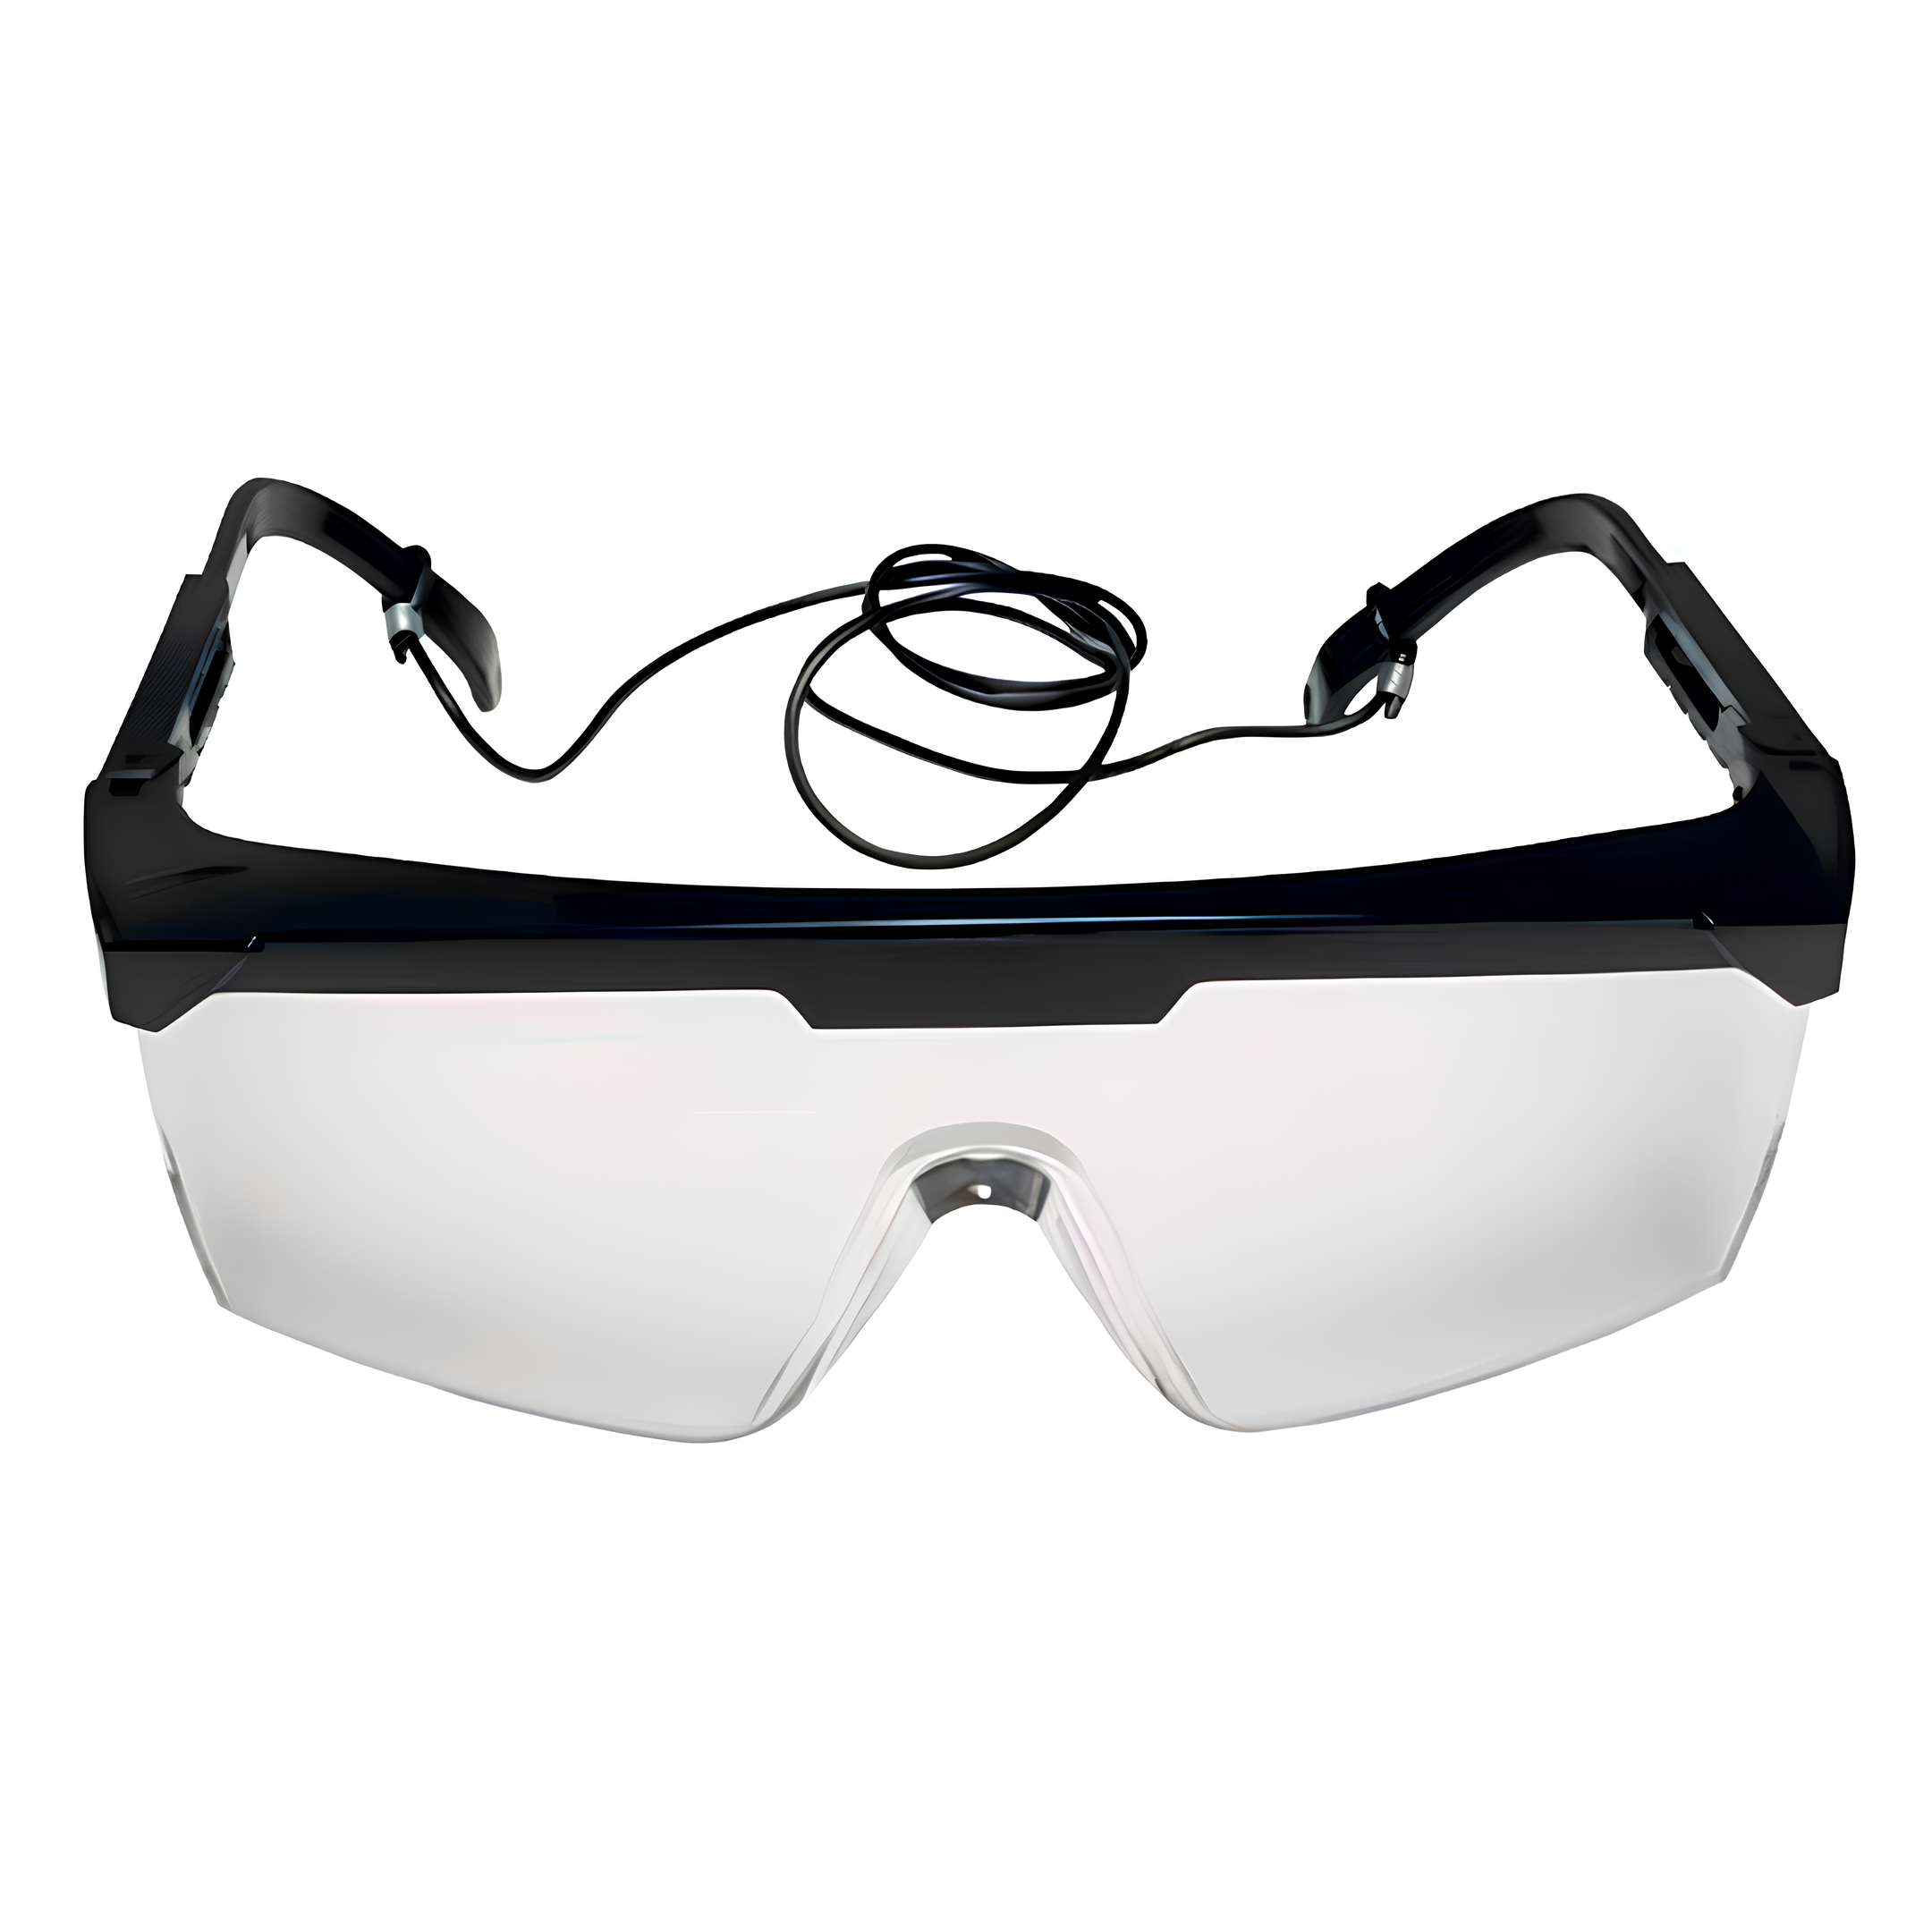 Oculos de Segurança Vision 3000 I Transparente HB004003107 3M